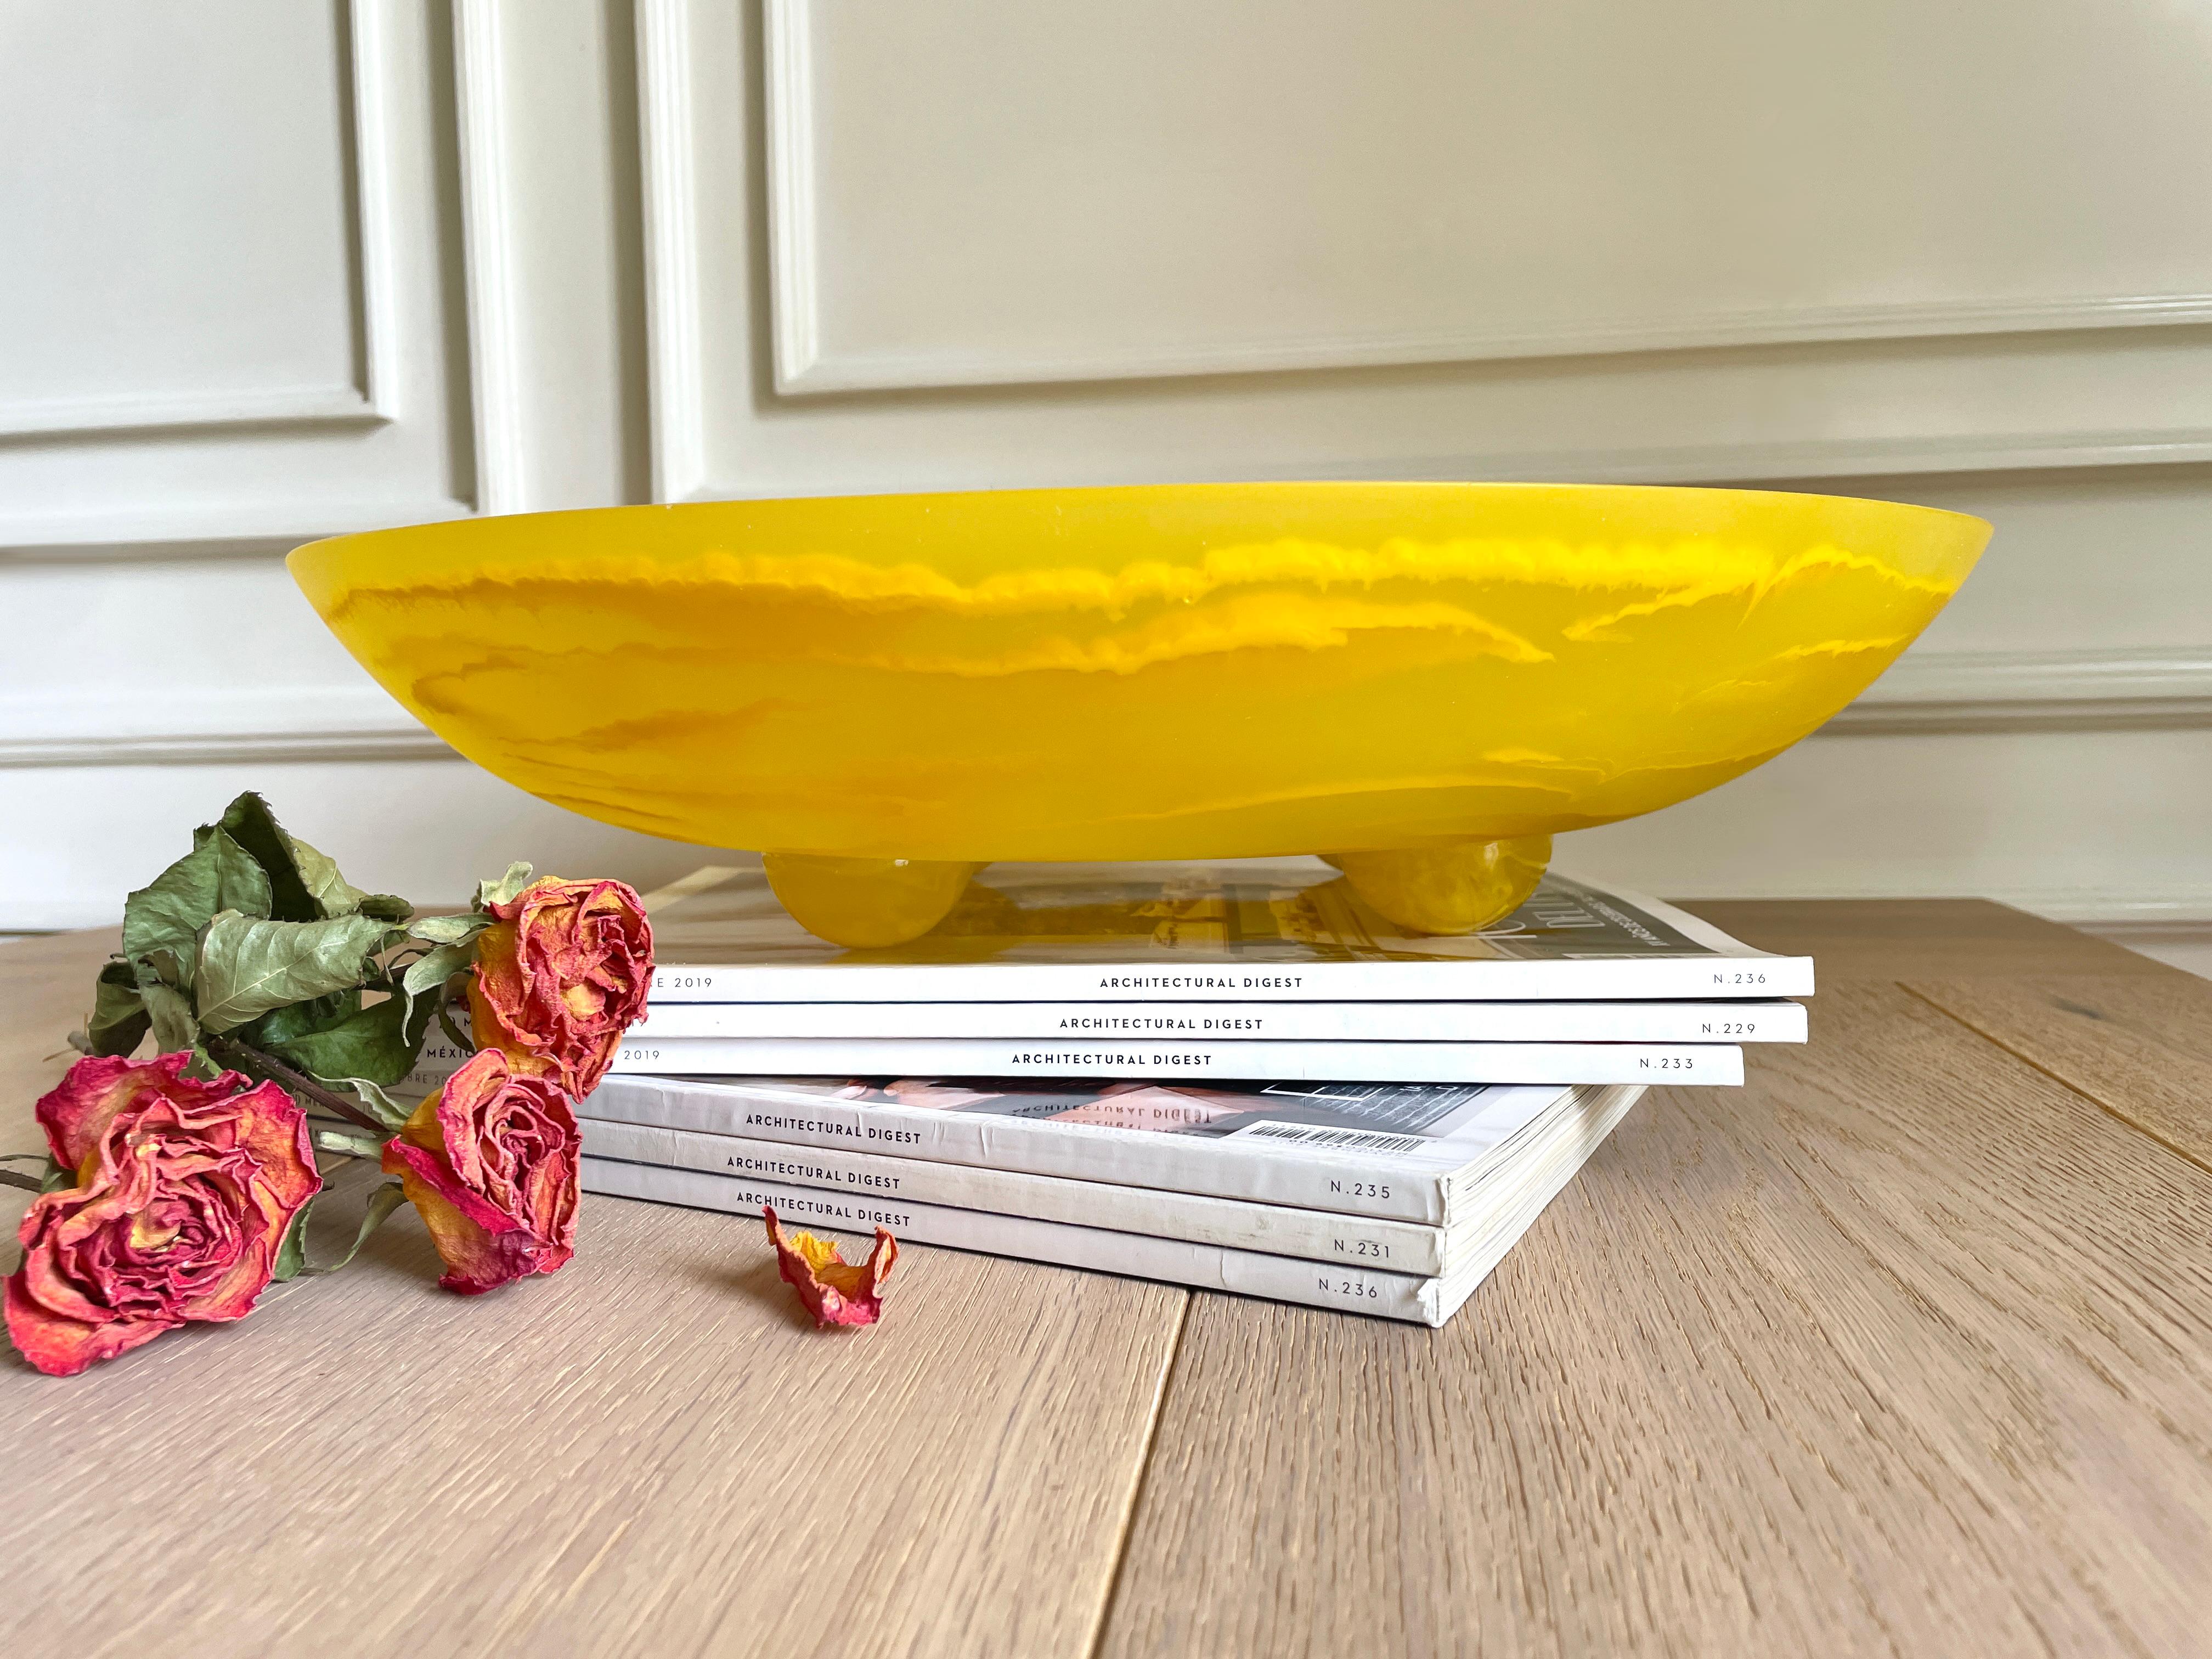 Eine elegante runde XL-Schale, die von vier Halbkugeln getragen wird, die ein lustiges, kühnes und einzigartiges Stück bilden, das sich hervorragend zum Aufbewahren von Obst, Pflanzen und vor allem für die Aufmerksamkeit aller eignet. Sie können es